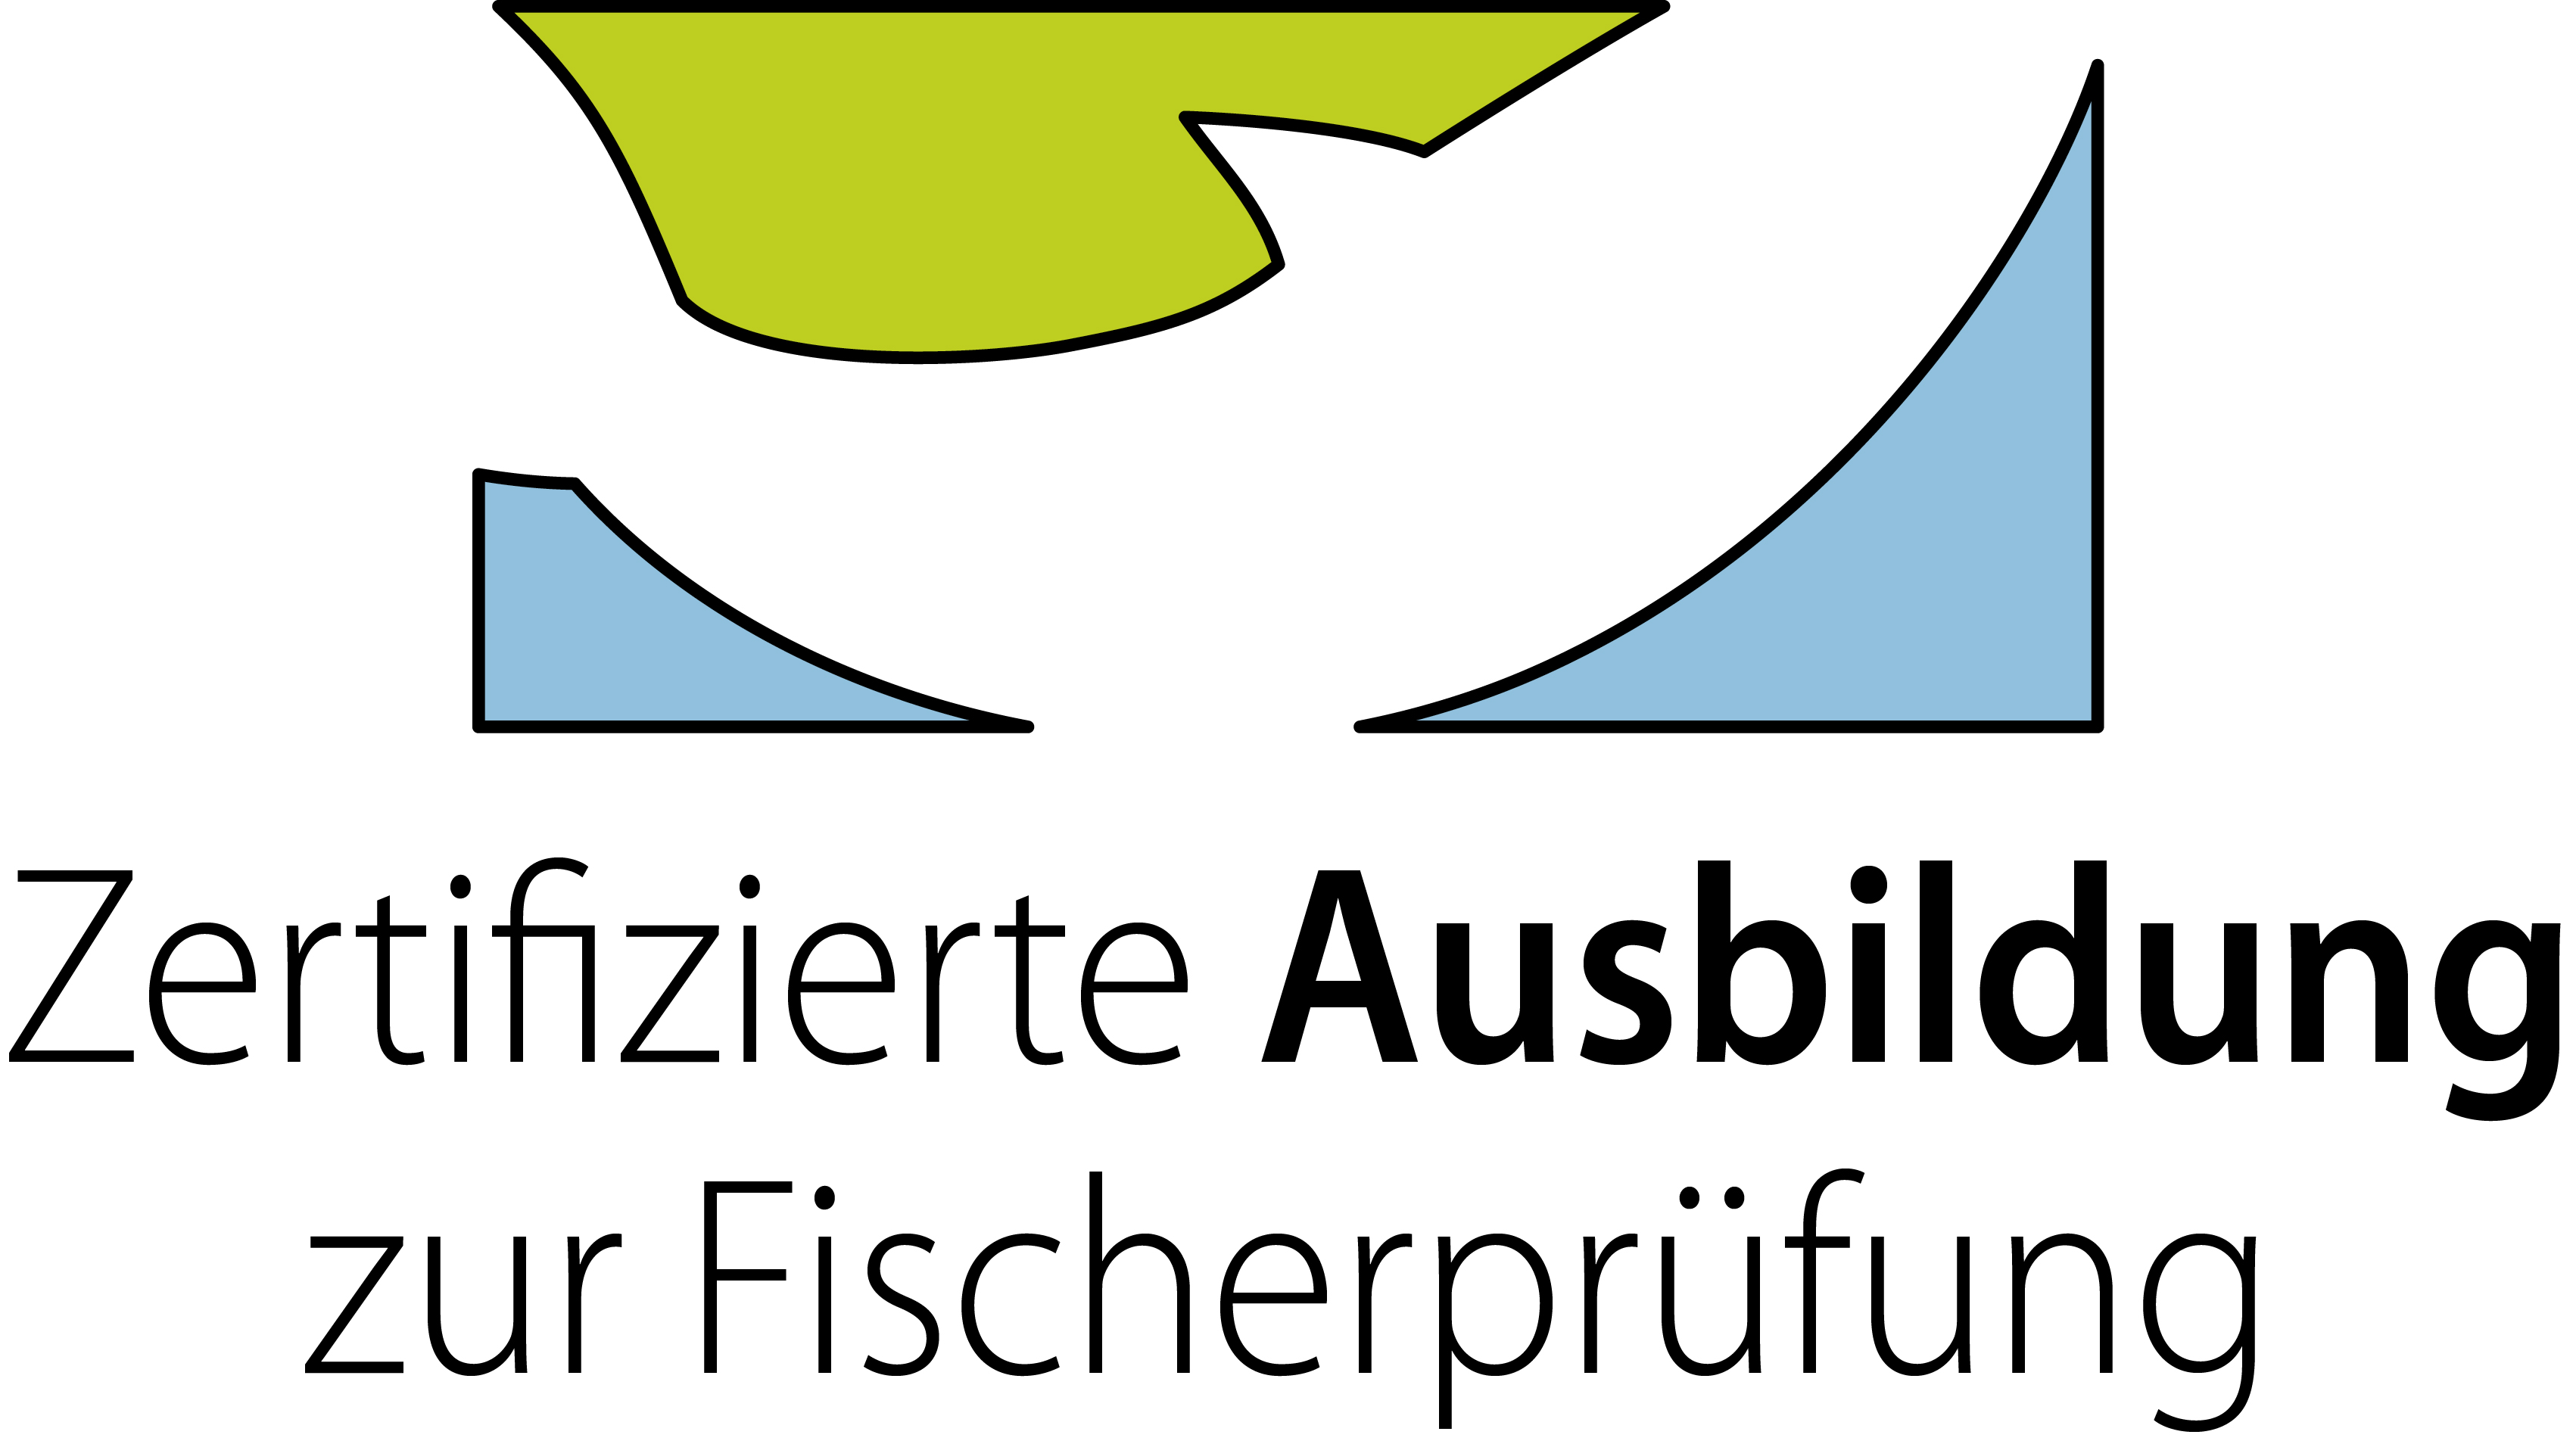 logo_zert_ausbildung_02.jpg